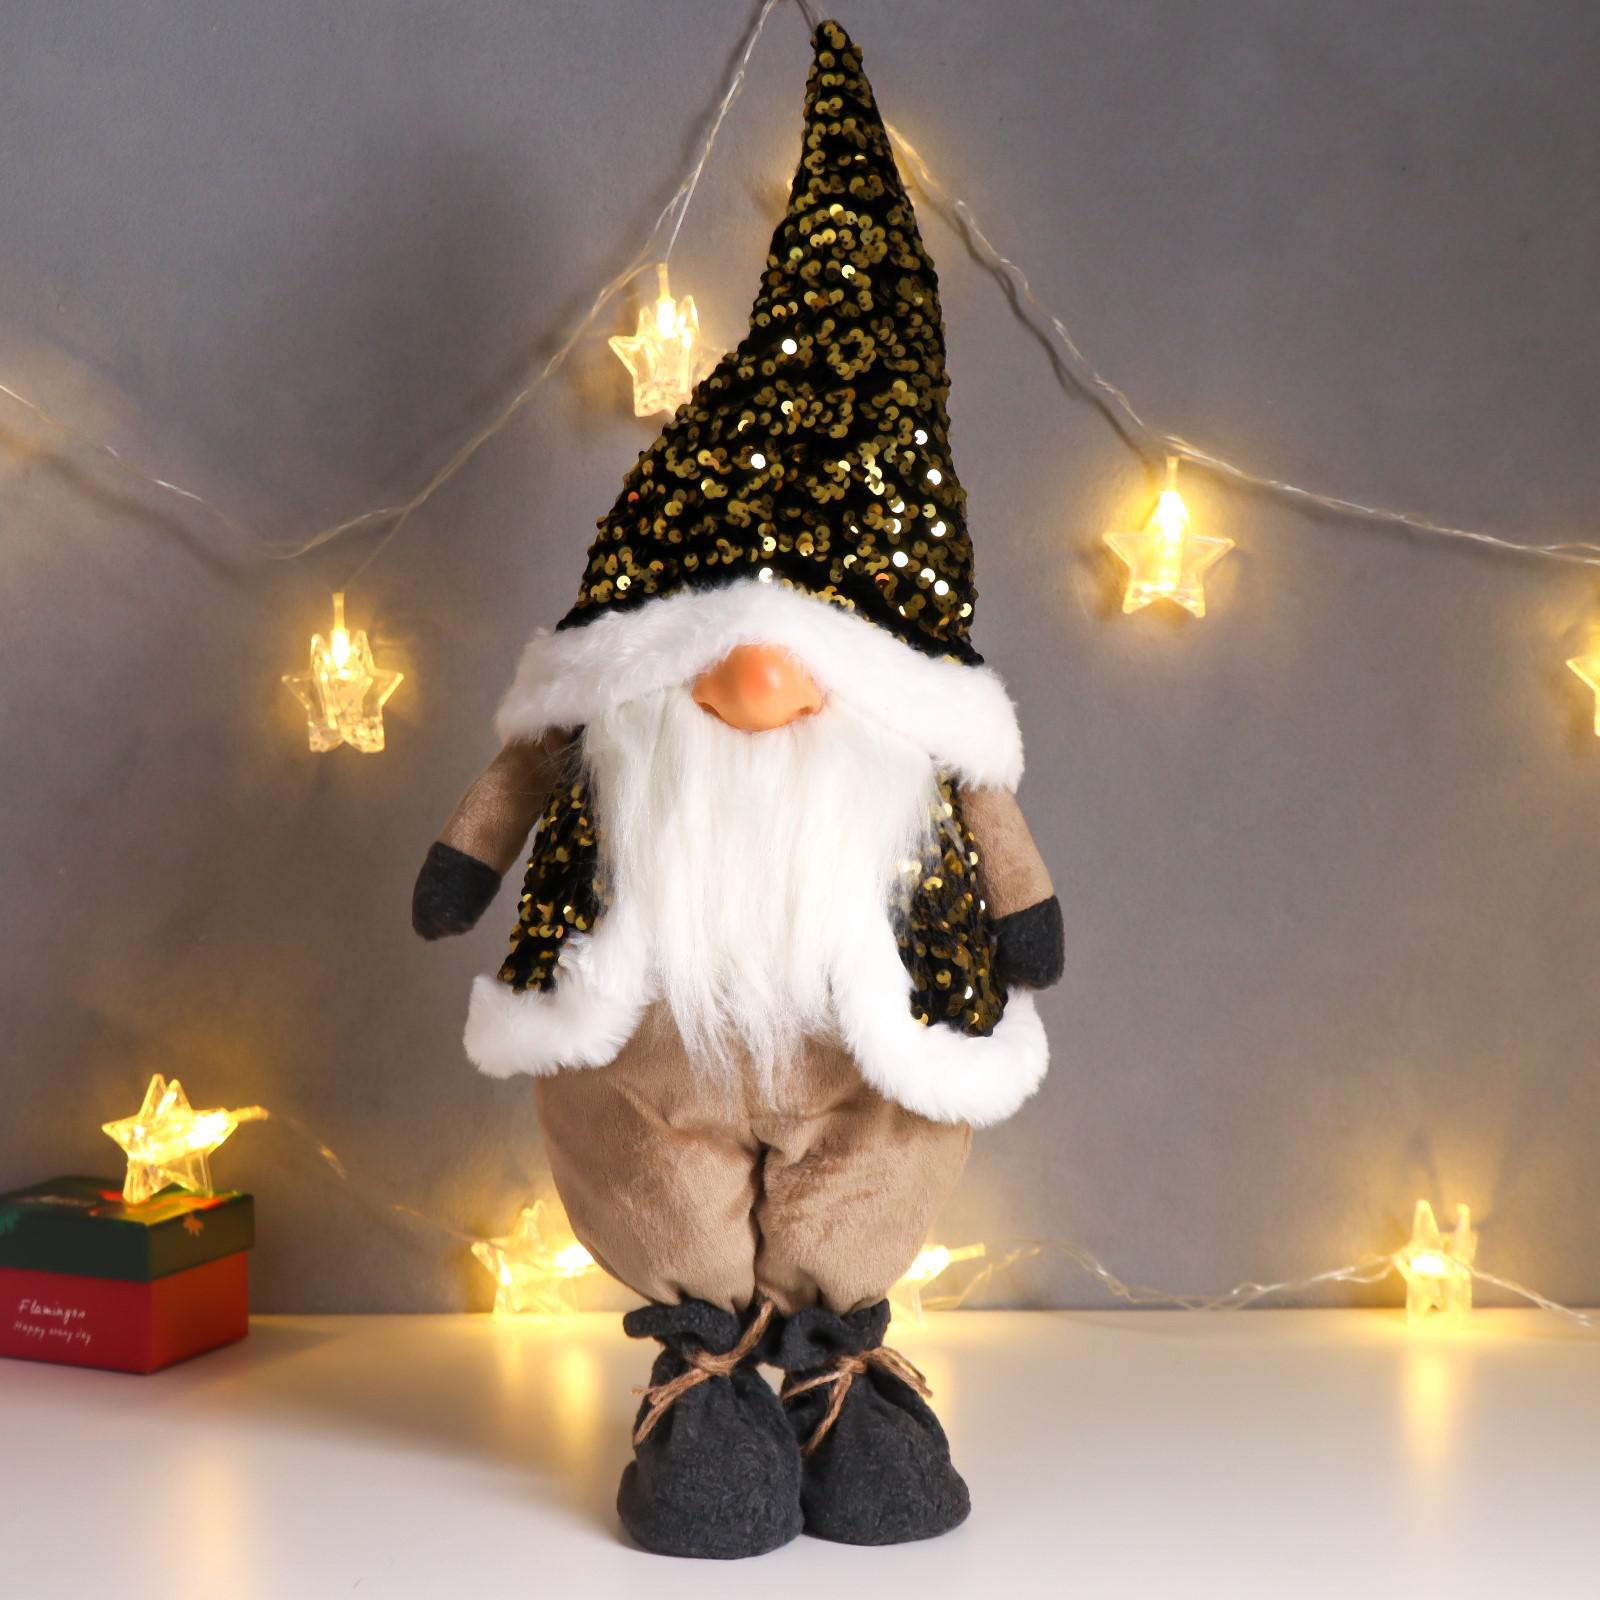 Кукла интерьерная Зимнее волшебство «Дед Мороз в золотом колпаке и жилетке с пайетками» 55х16х22 см - фото 1